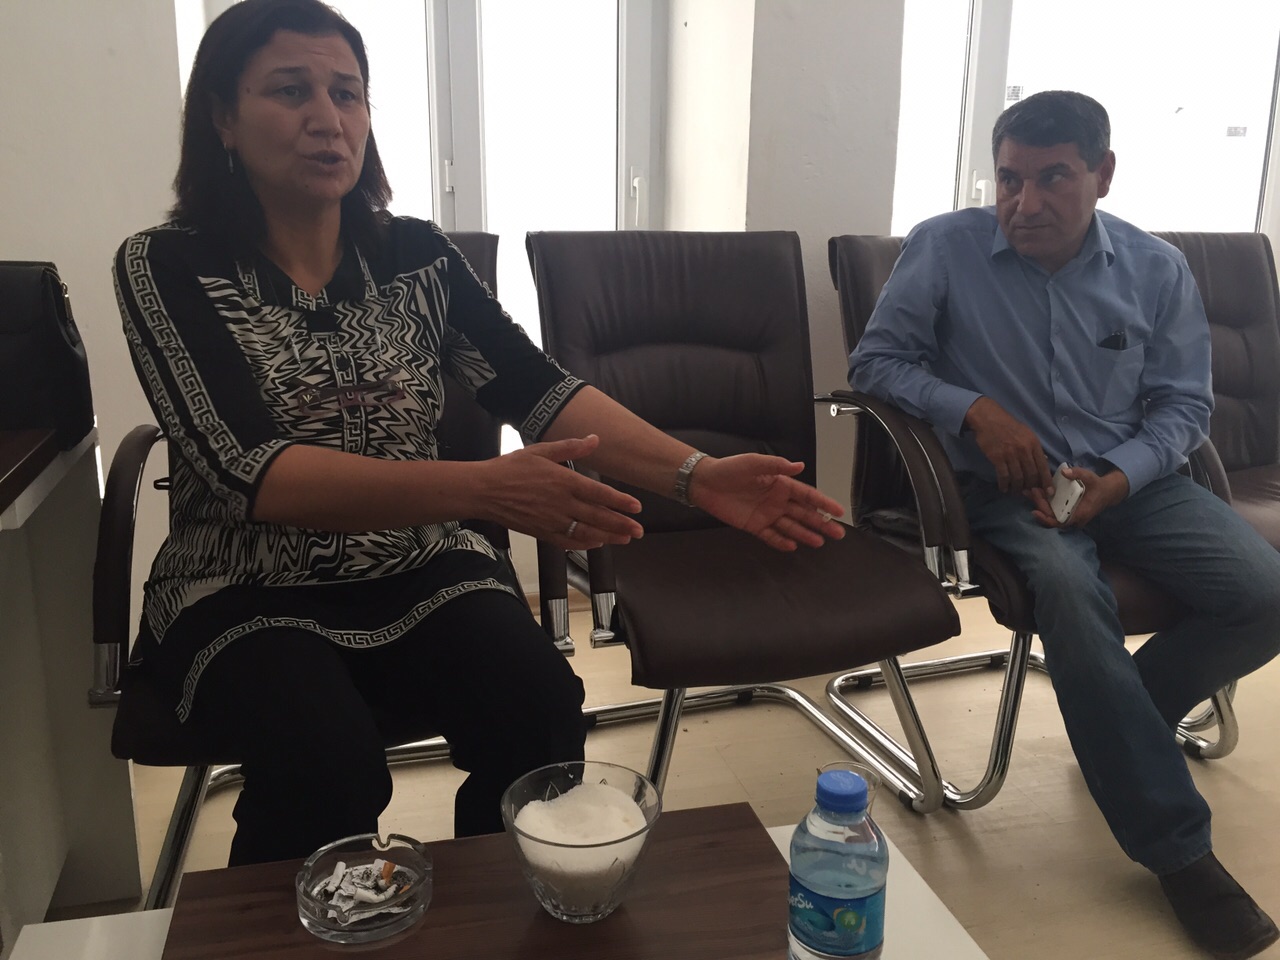 Urfa milletvekili Leyla Güven, ‘Gözaltına alınanların başına tıpkı 1990'lardaki gibi poşet geçiriliyor. Ne acıdır ki darp da, işkence de başladı’ diyor